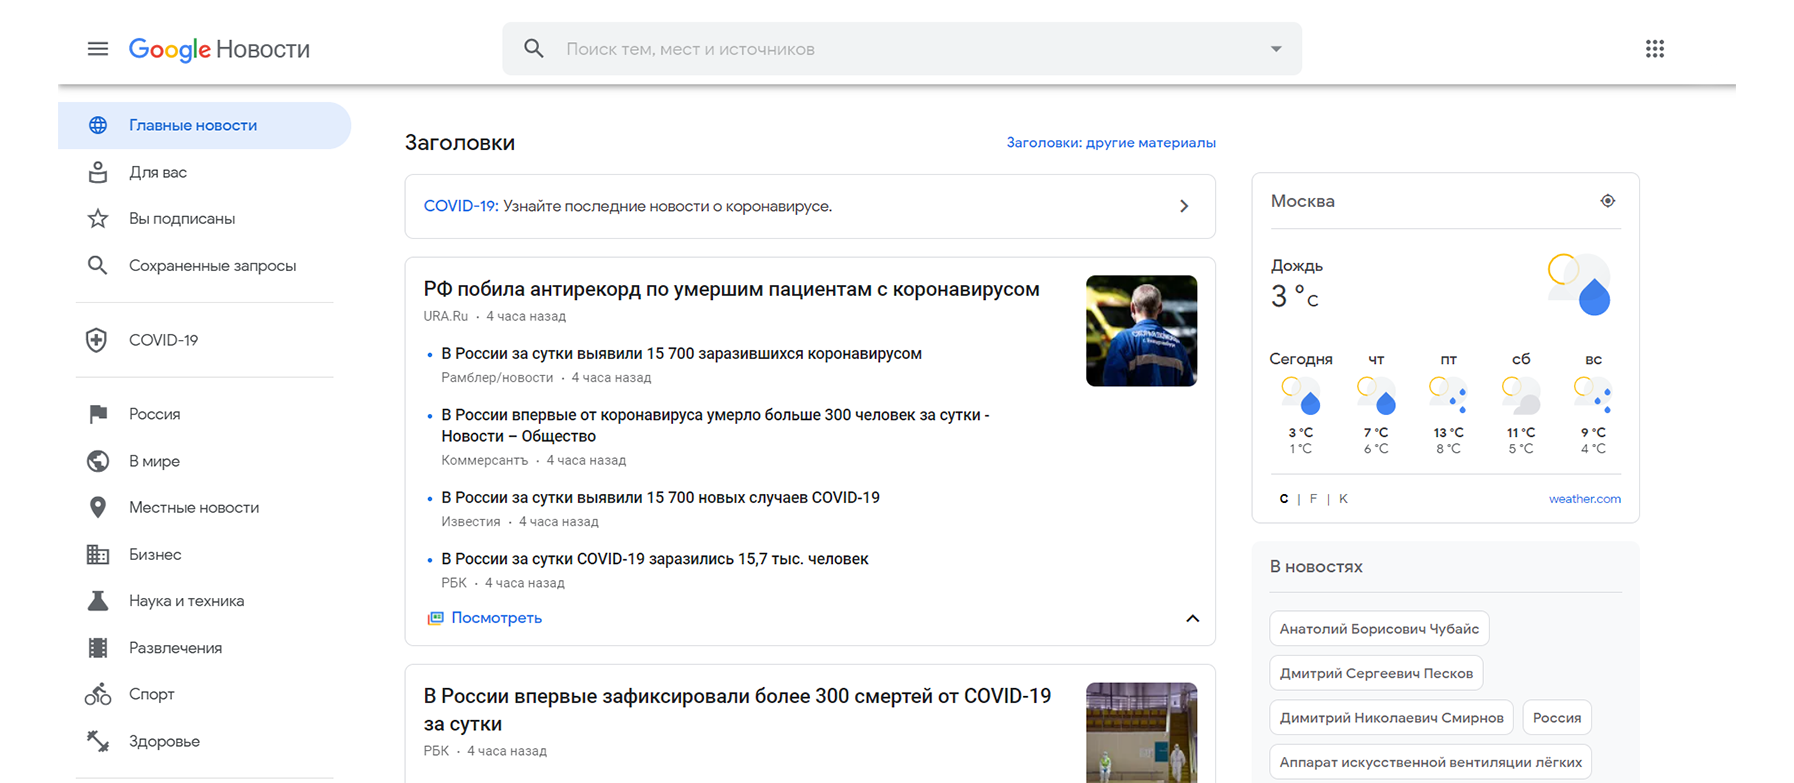 Новостной агрегатор Google Новости